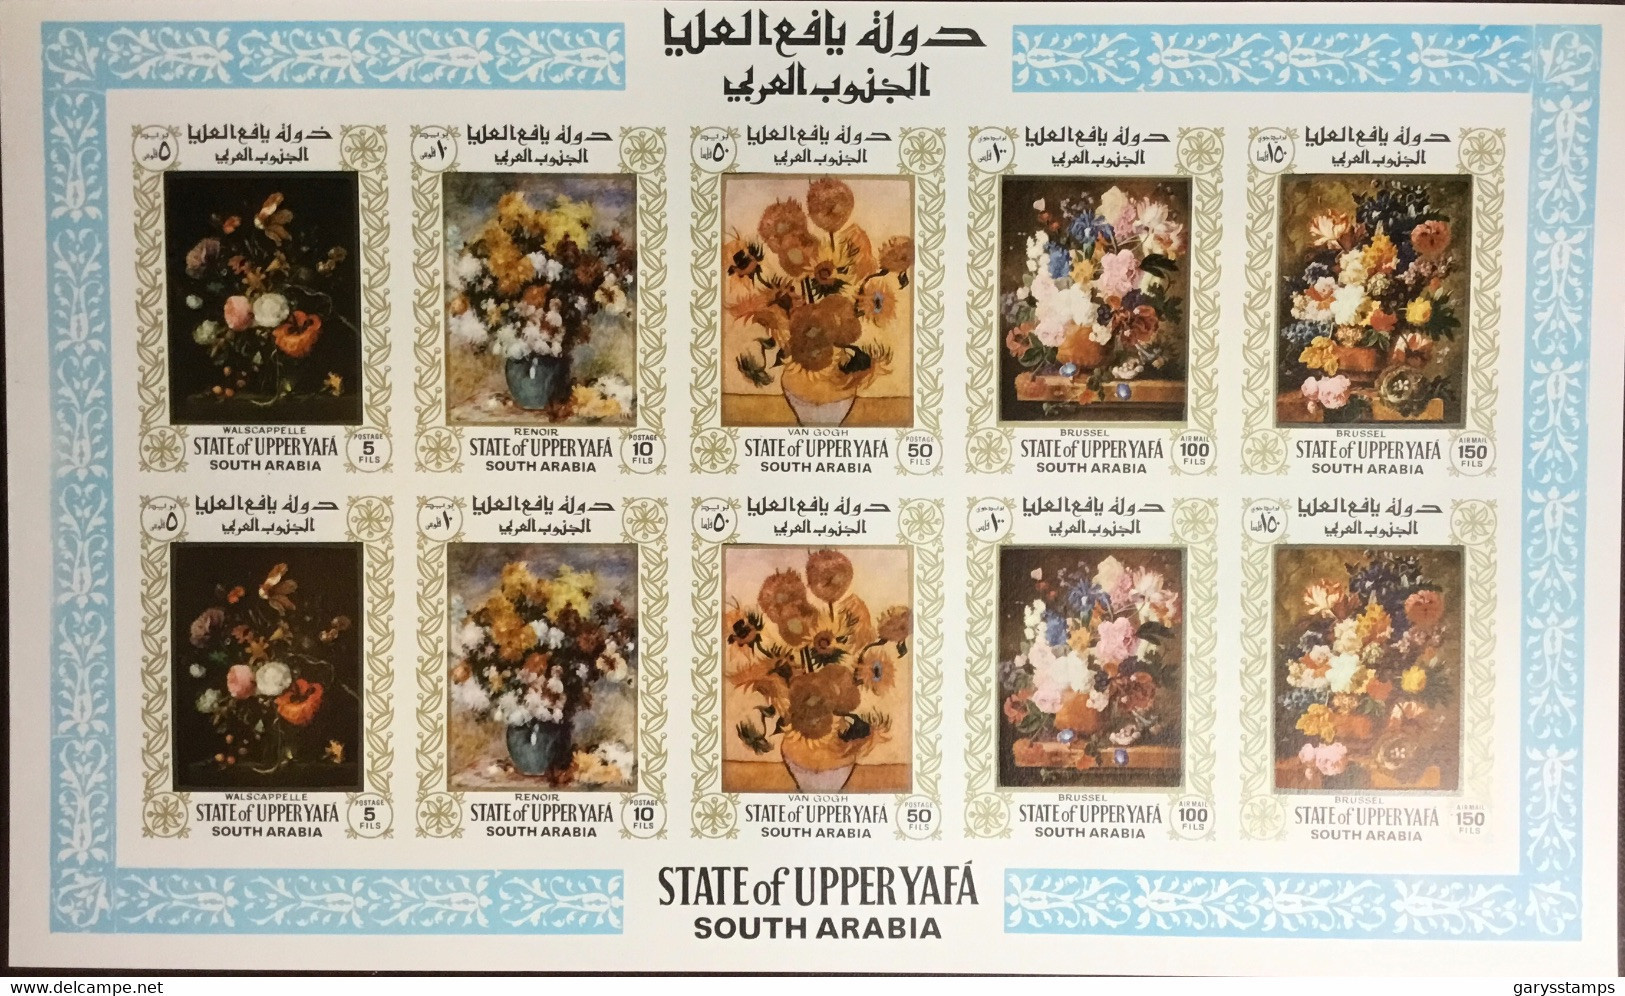 South Arabia Aden Upper Yafa 1967 Flowers Paintings Sheetlet MNH - Yemen